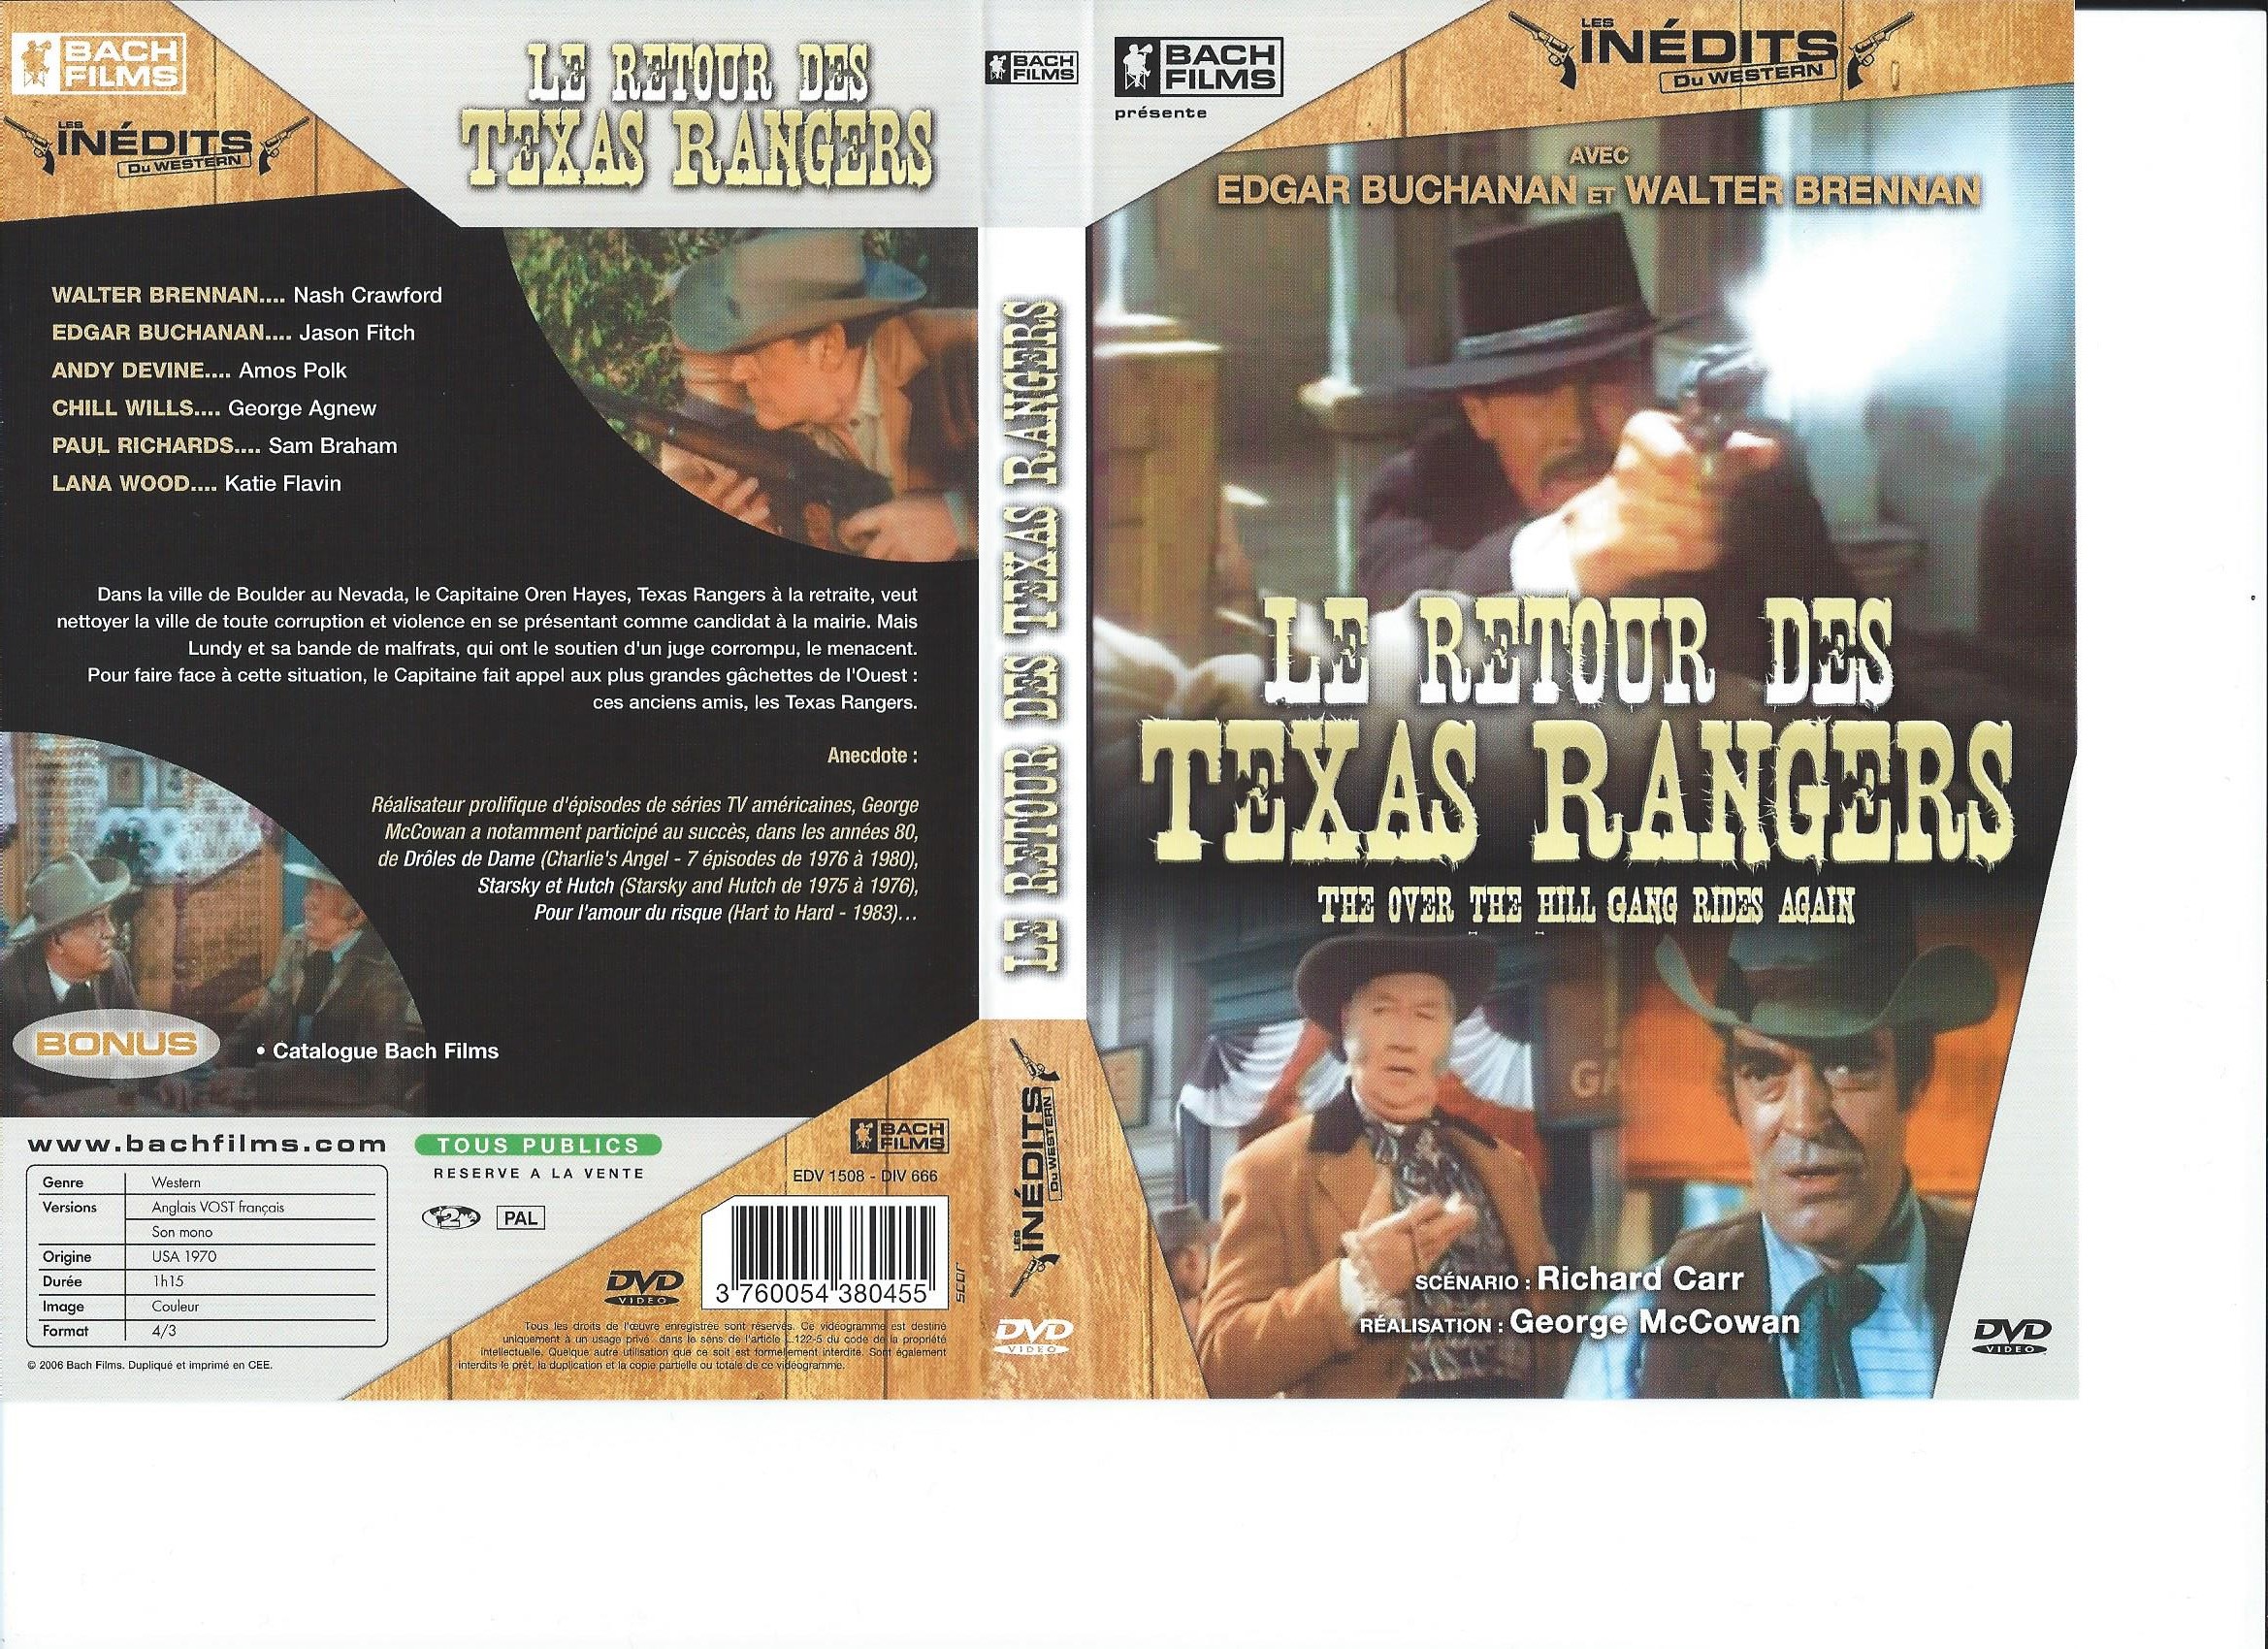 Jaquette DVD Le retour des Texas Ranger